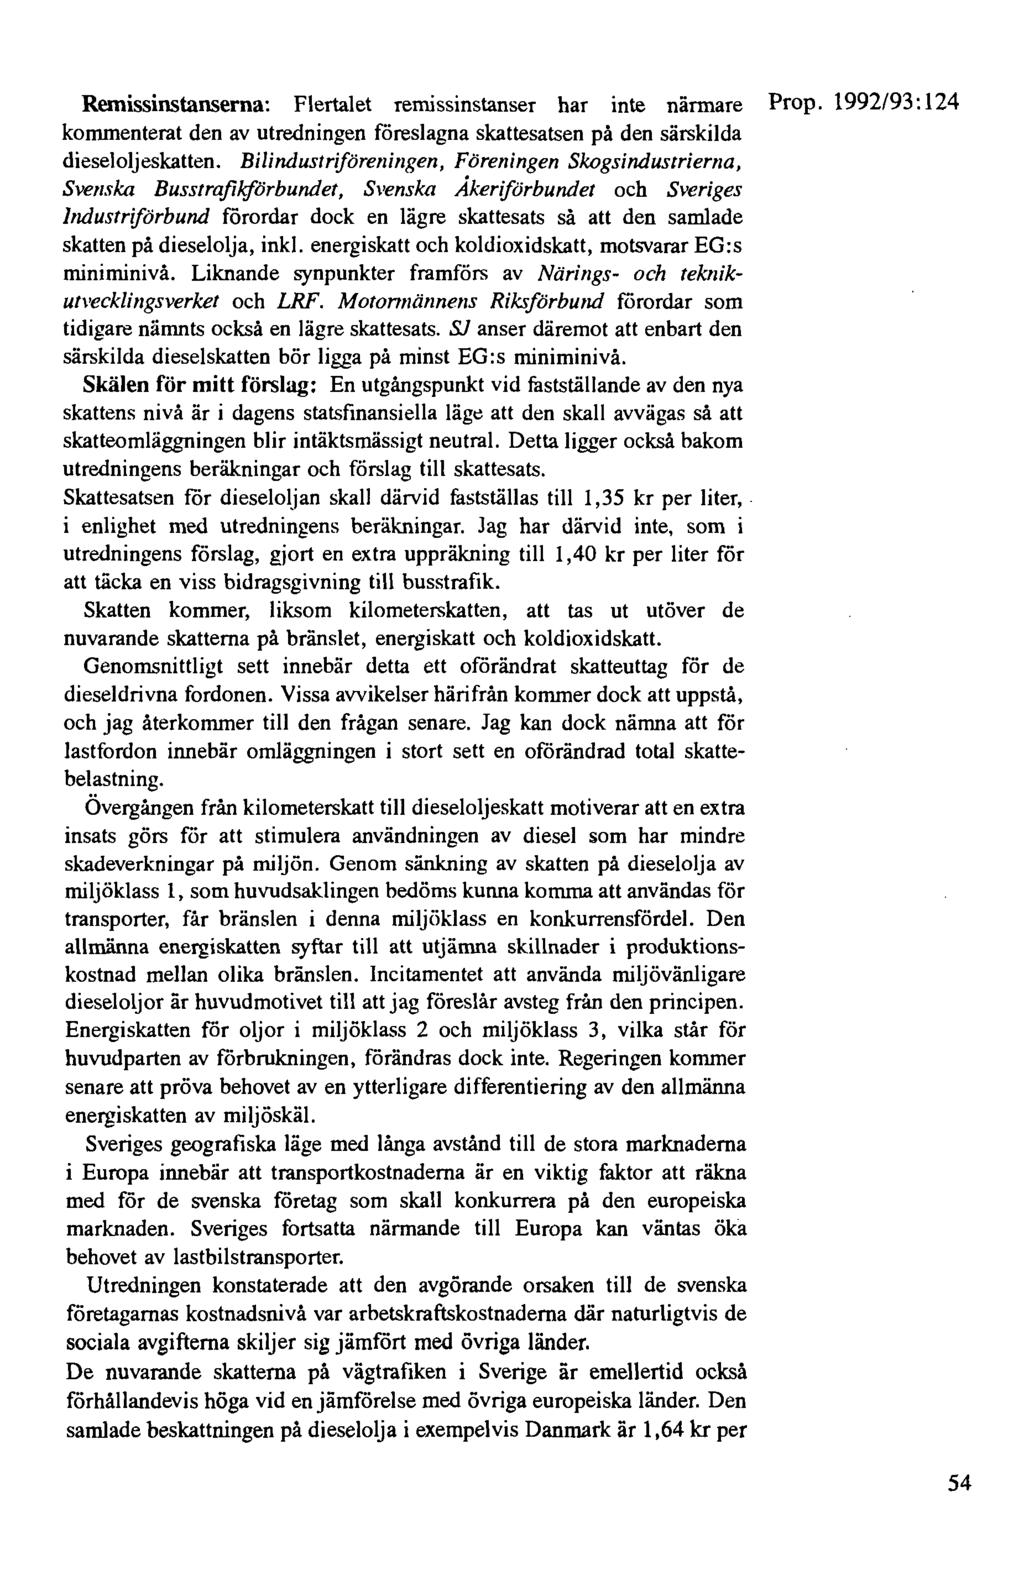 Rernissinstanserna: Flertalet remissinstanser har inte närmare Prop. 1992/93: 124 kommenterat den av utredningen föreslagna skattesatsen på den särskilda dieseloljeskatten.